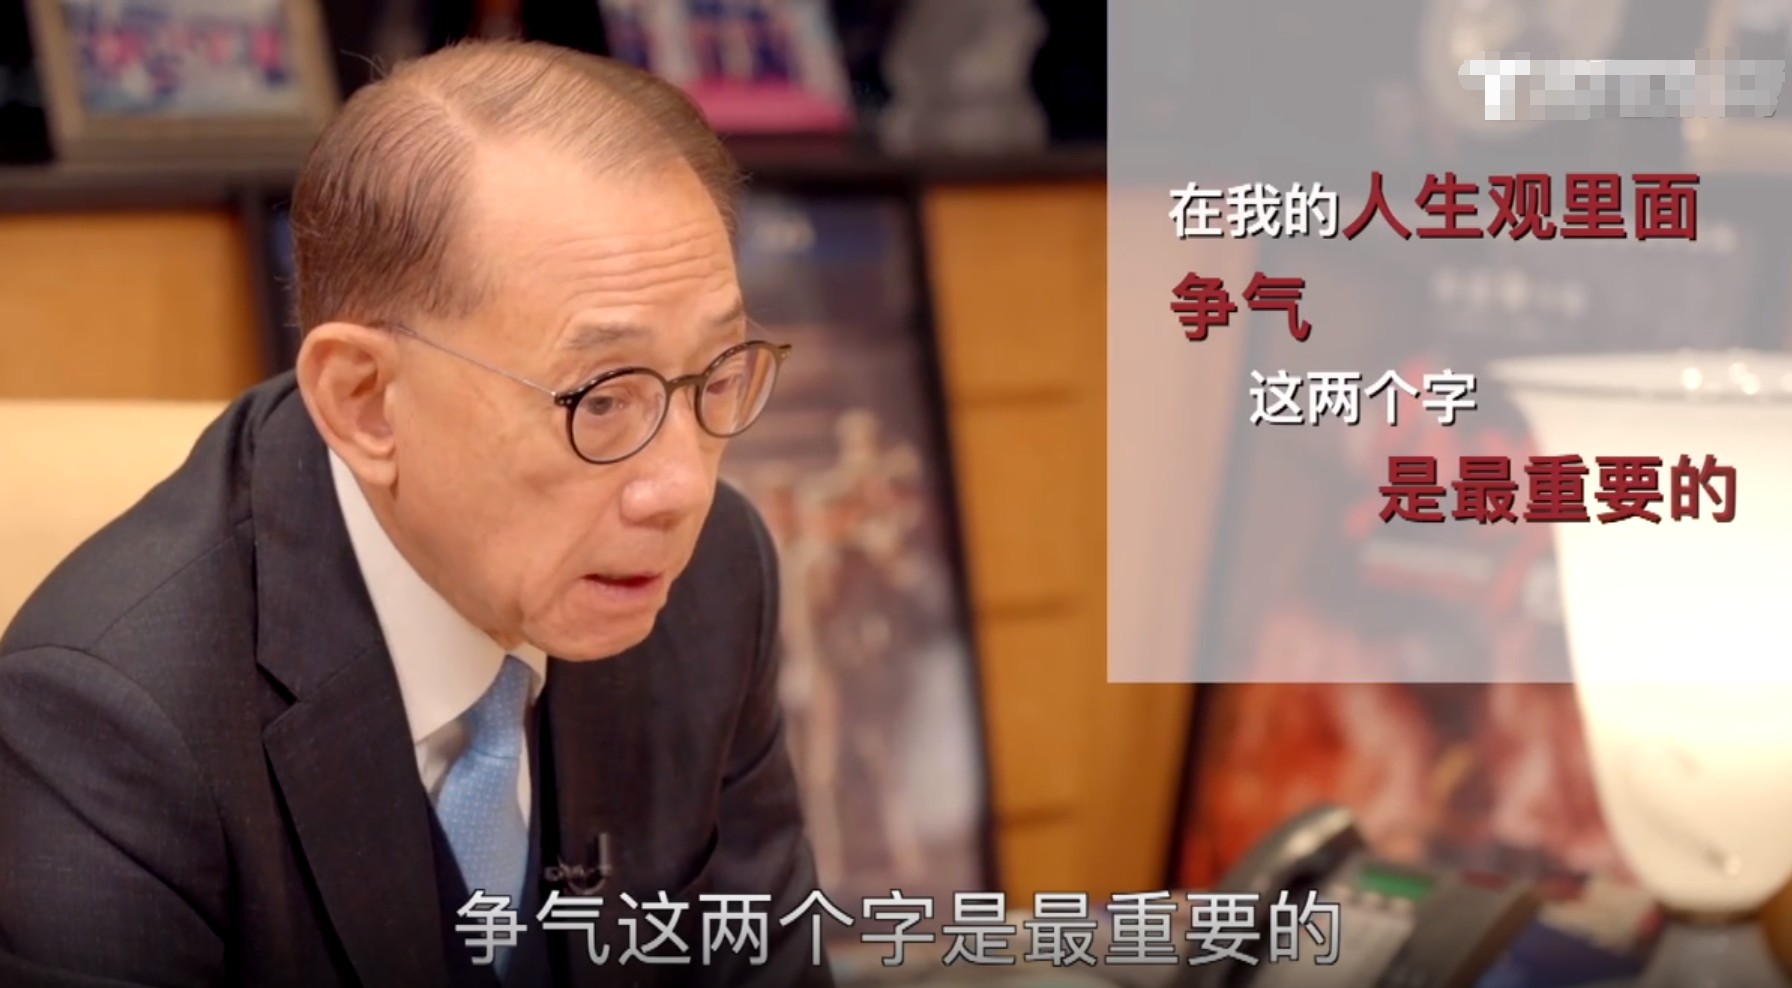 《可看香港》独家专访英皇集团杨受成 潮商资讯 图3张